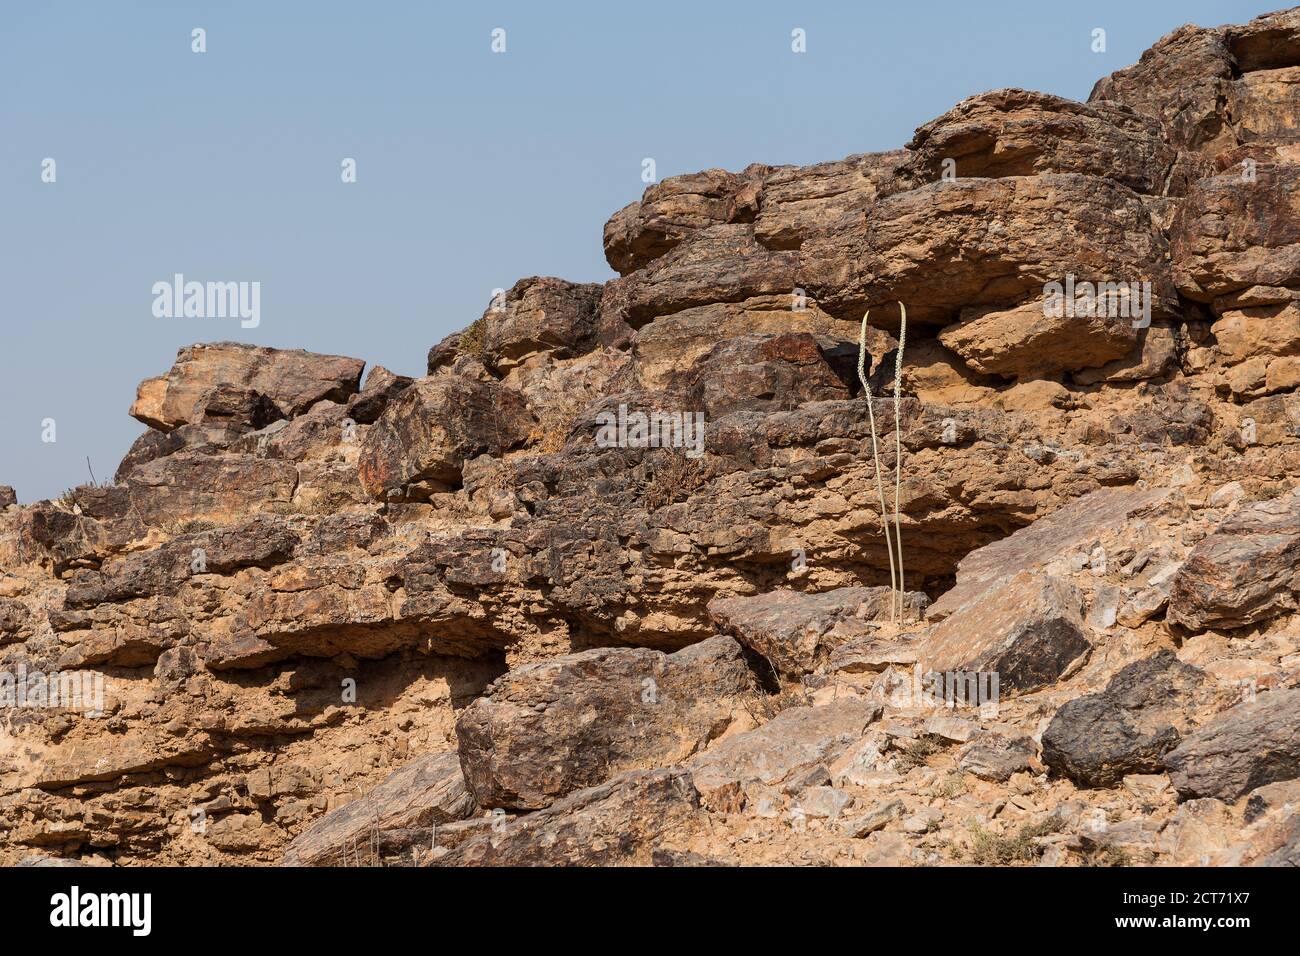 Zwei mittelmeer-Seestiel Stiele der Öffnung Knospen wachsen auf Eine felsige vertikale Felswand in der judäischen Wüste in israel Stockfoto